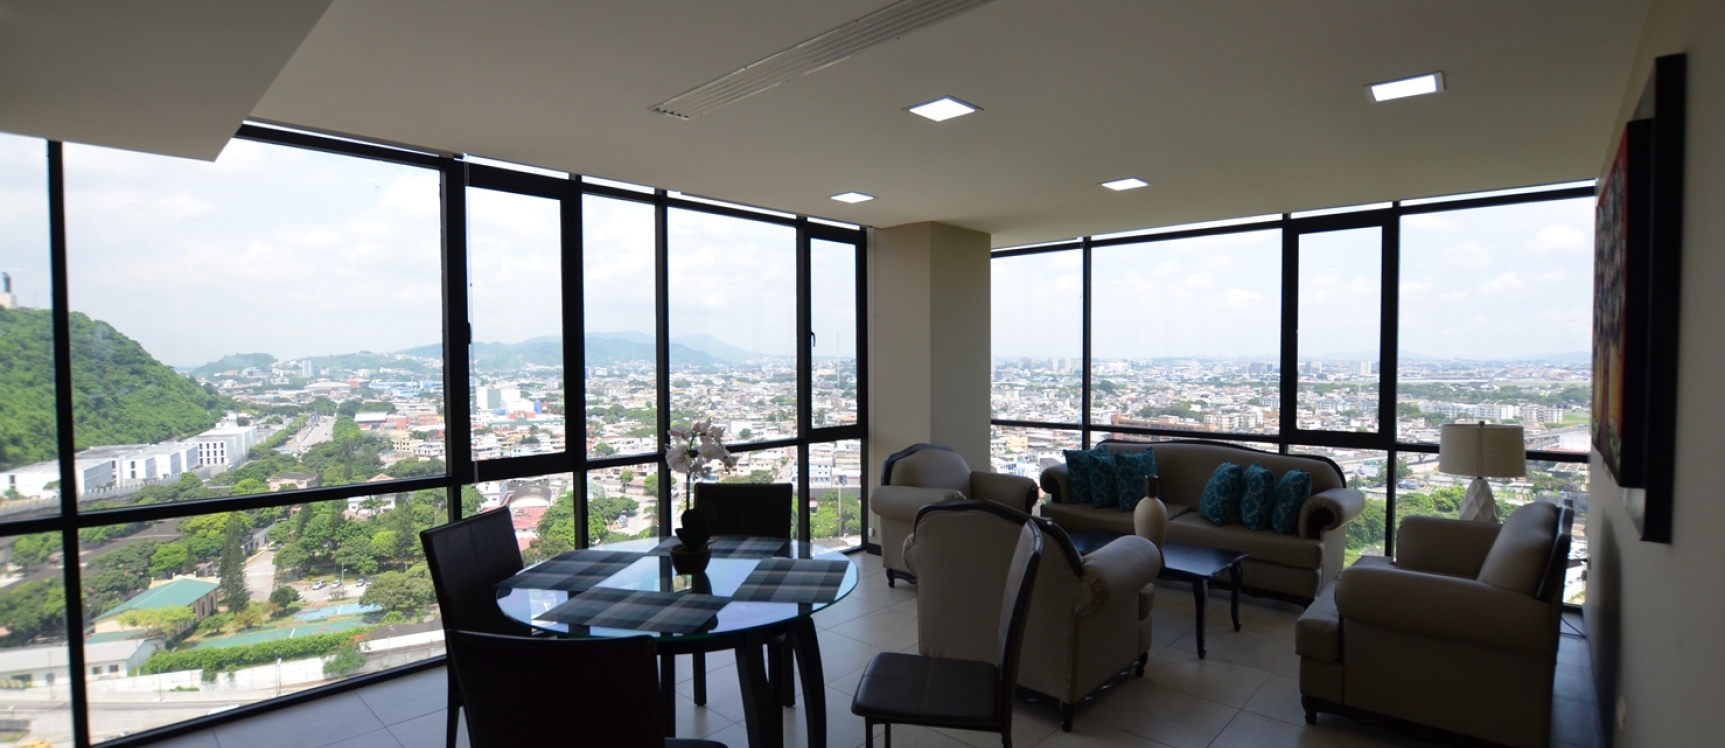 GeoBienes - Departamento en Venta Edificio Bellini IV centro de Guayaquil - Plusvalia Guayaquil Casas de venta y alquiler Inmobiliaria Ecuador